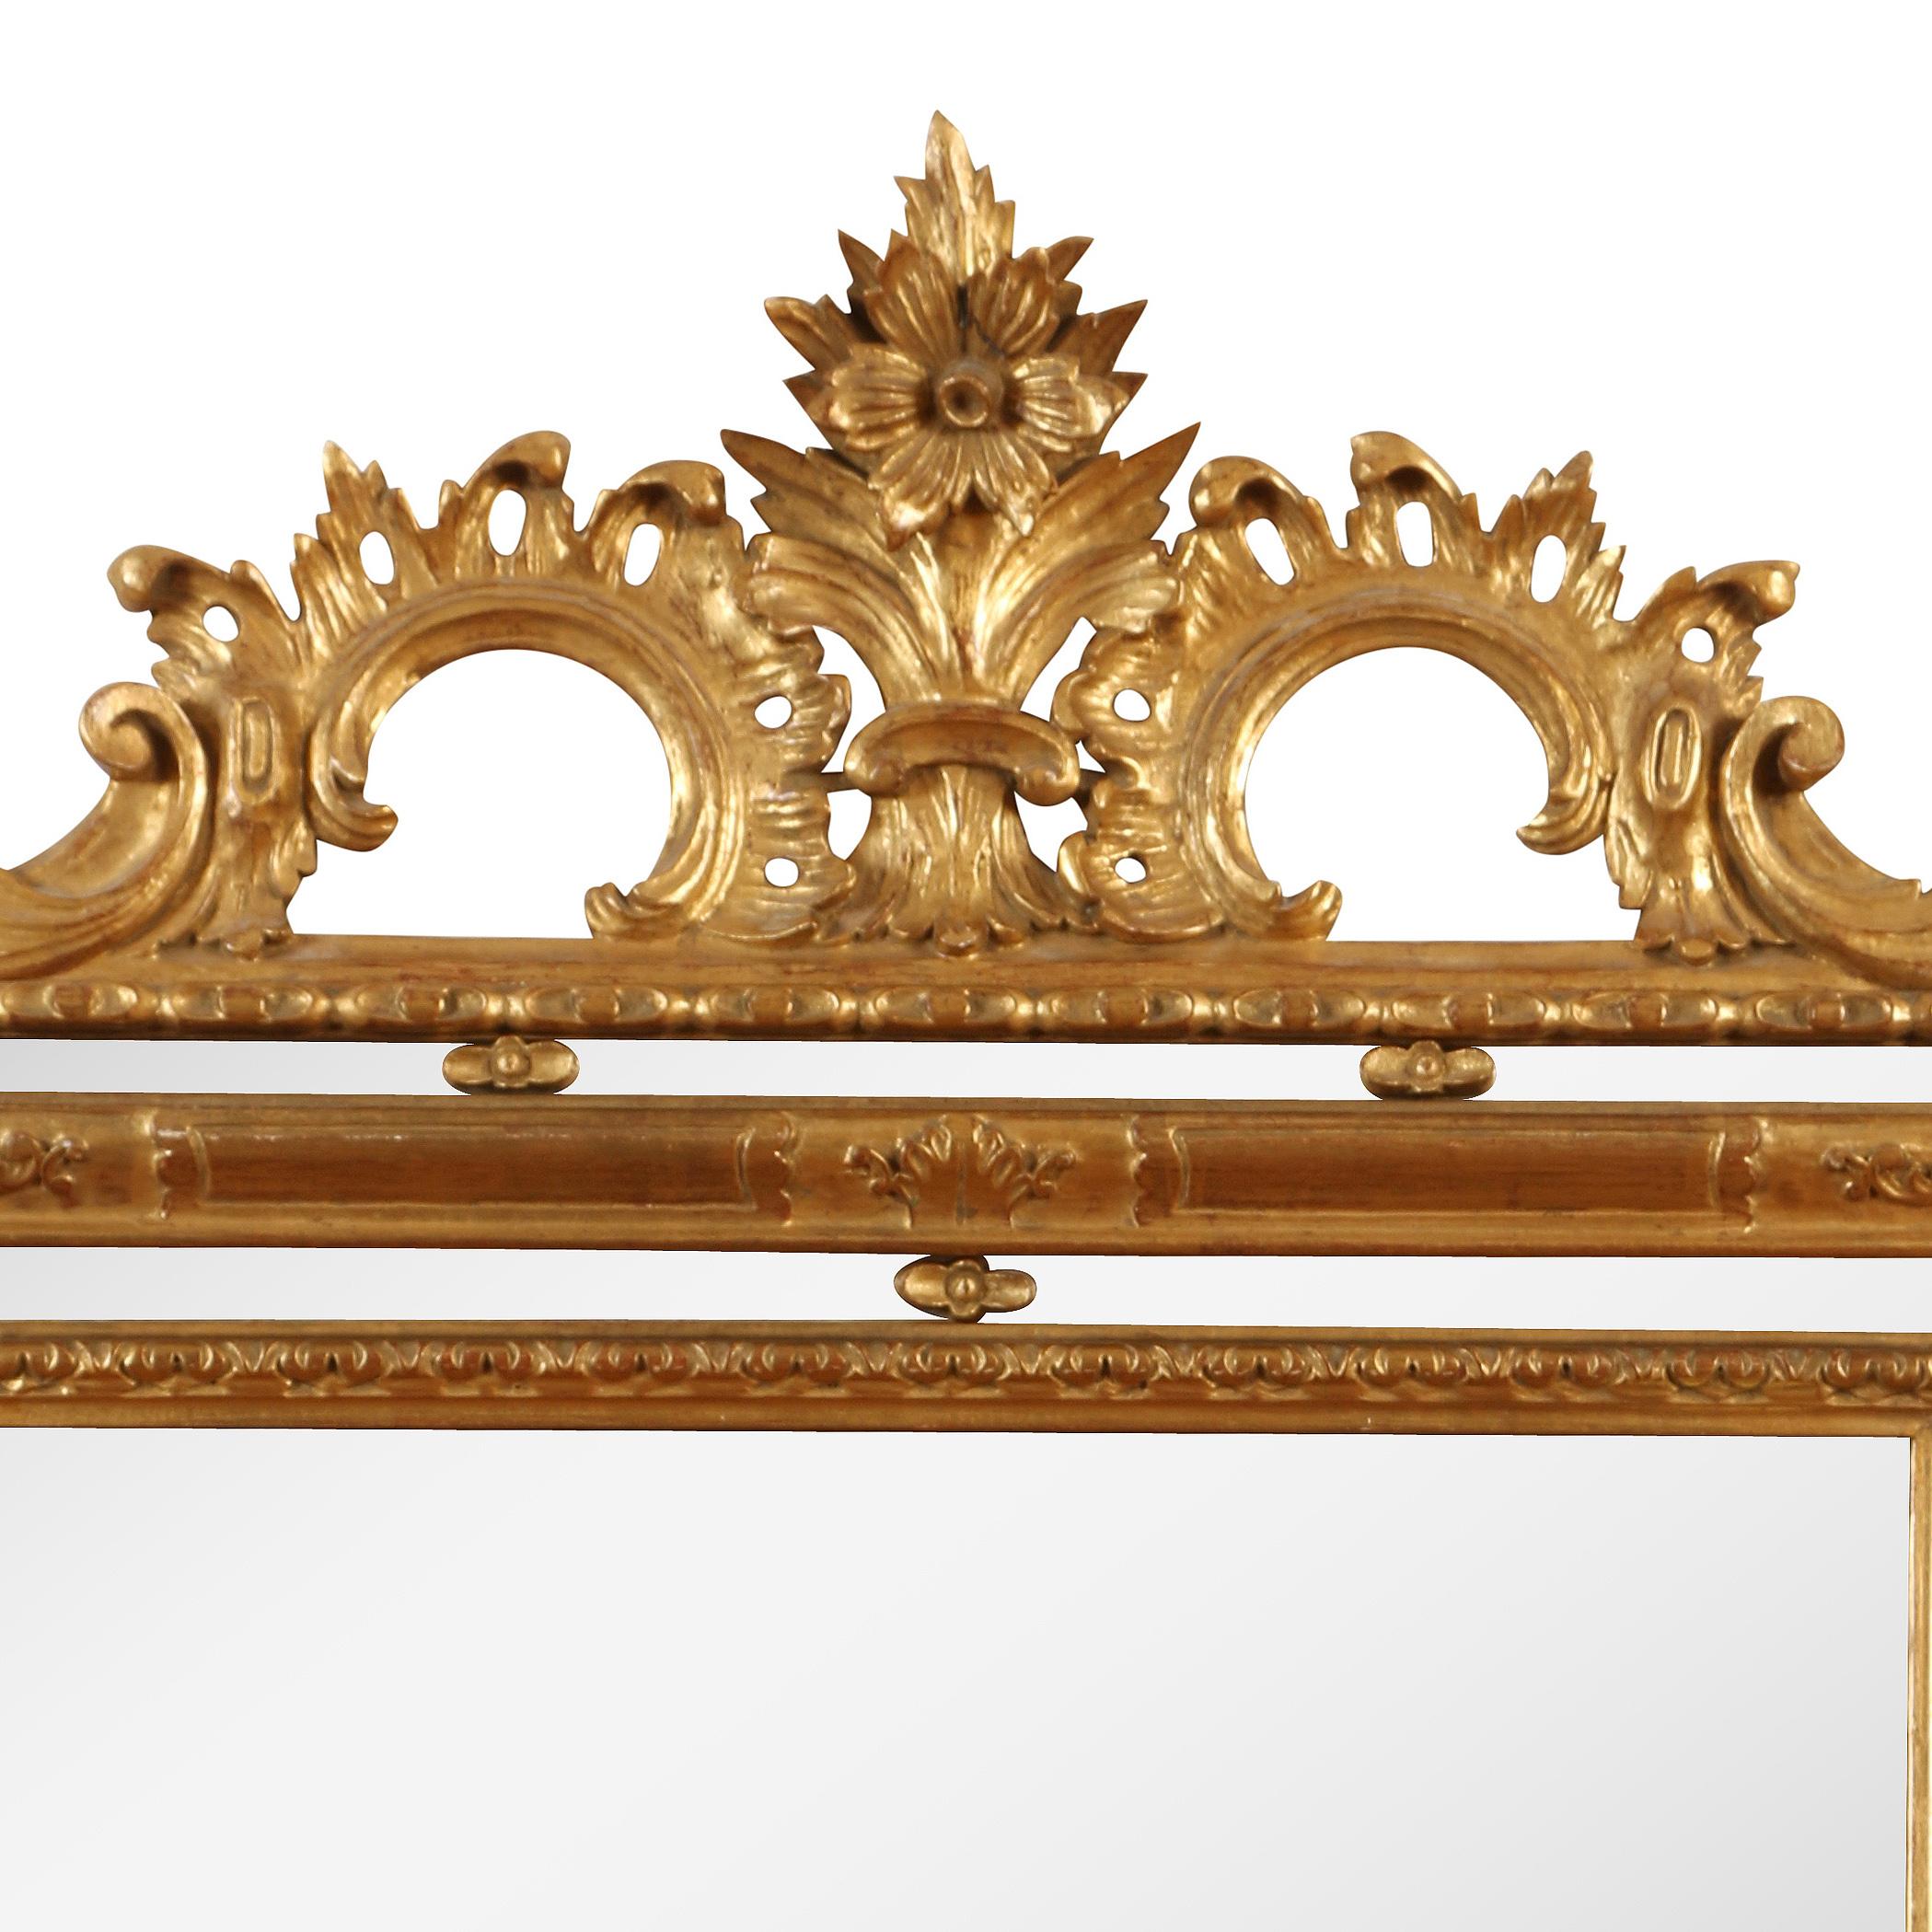 Rechteckiger Spiegel aus Giltholz im Regence-Stil mit dreifachem Rahmen. Schnörkel und Blumendetails auf der Krone.